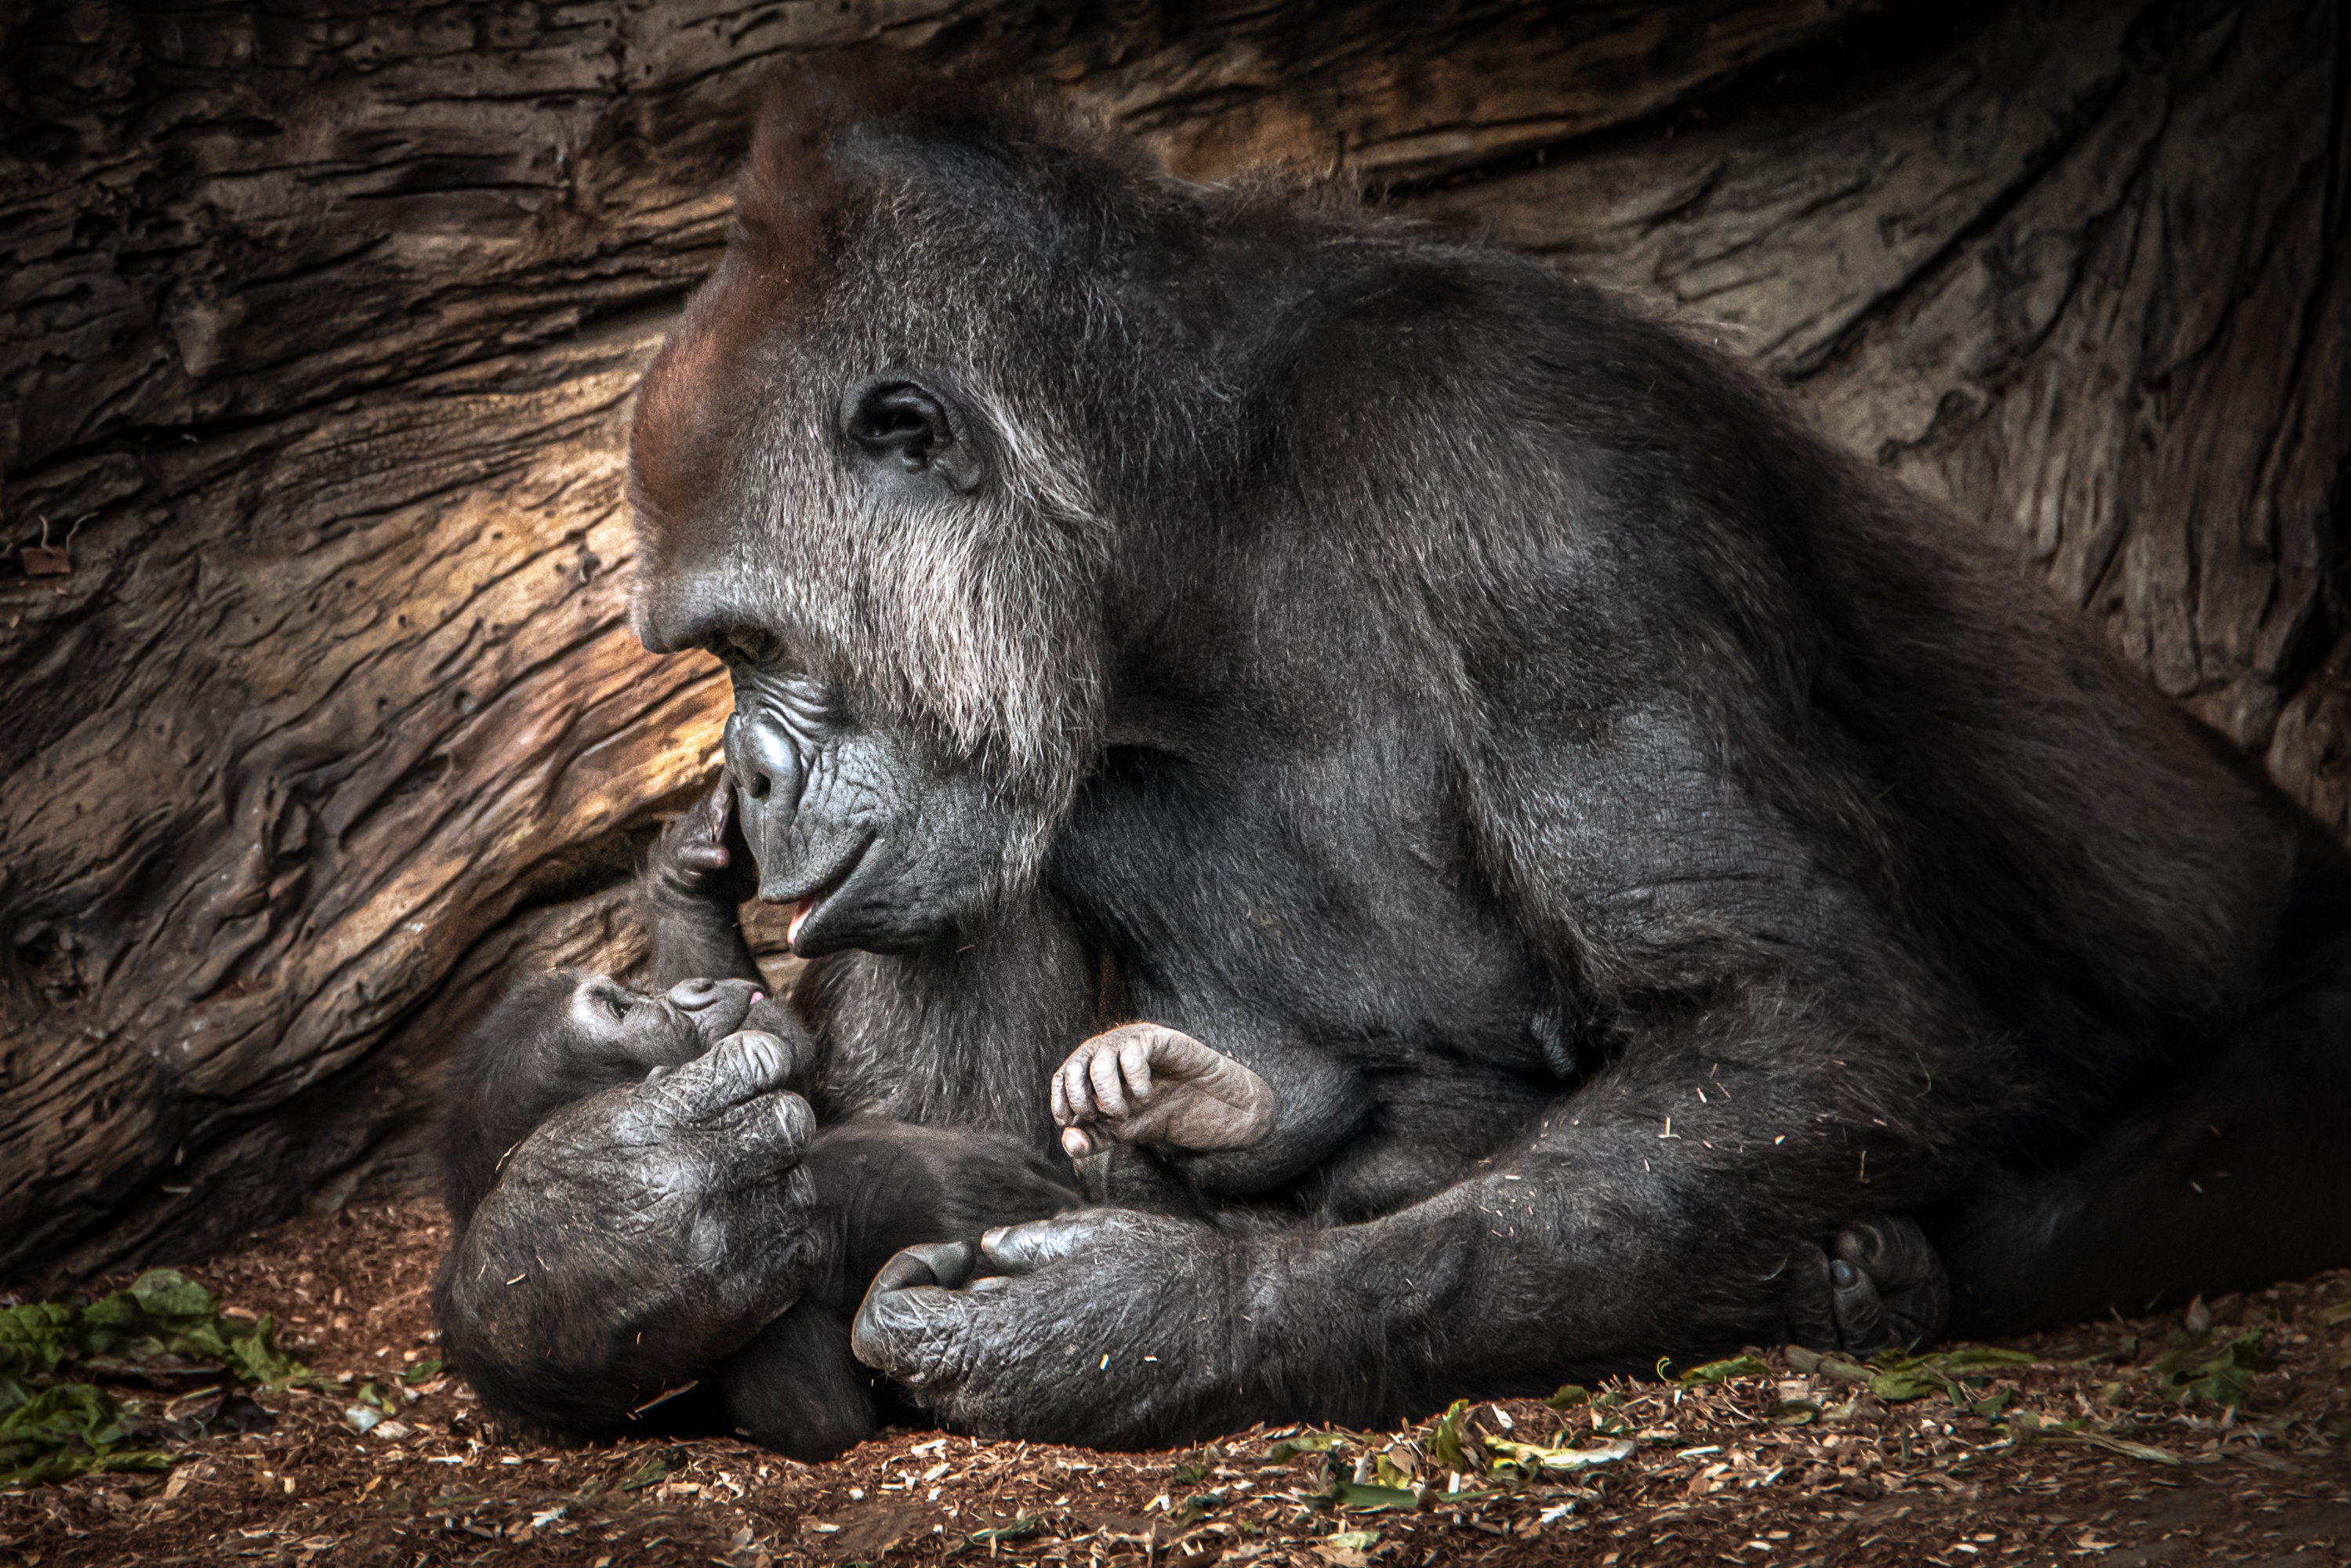 Free download wallpaper Monkeys, Gorilla, Animal, Primate, Baby Animal on your PC desktop